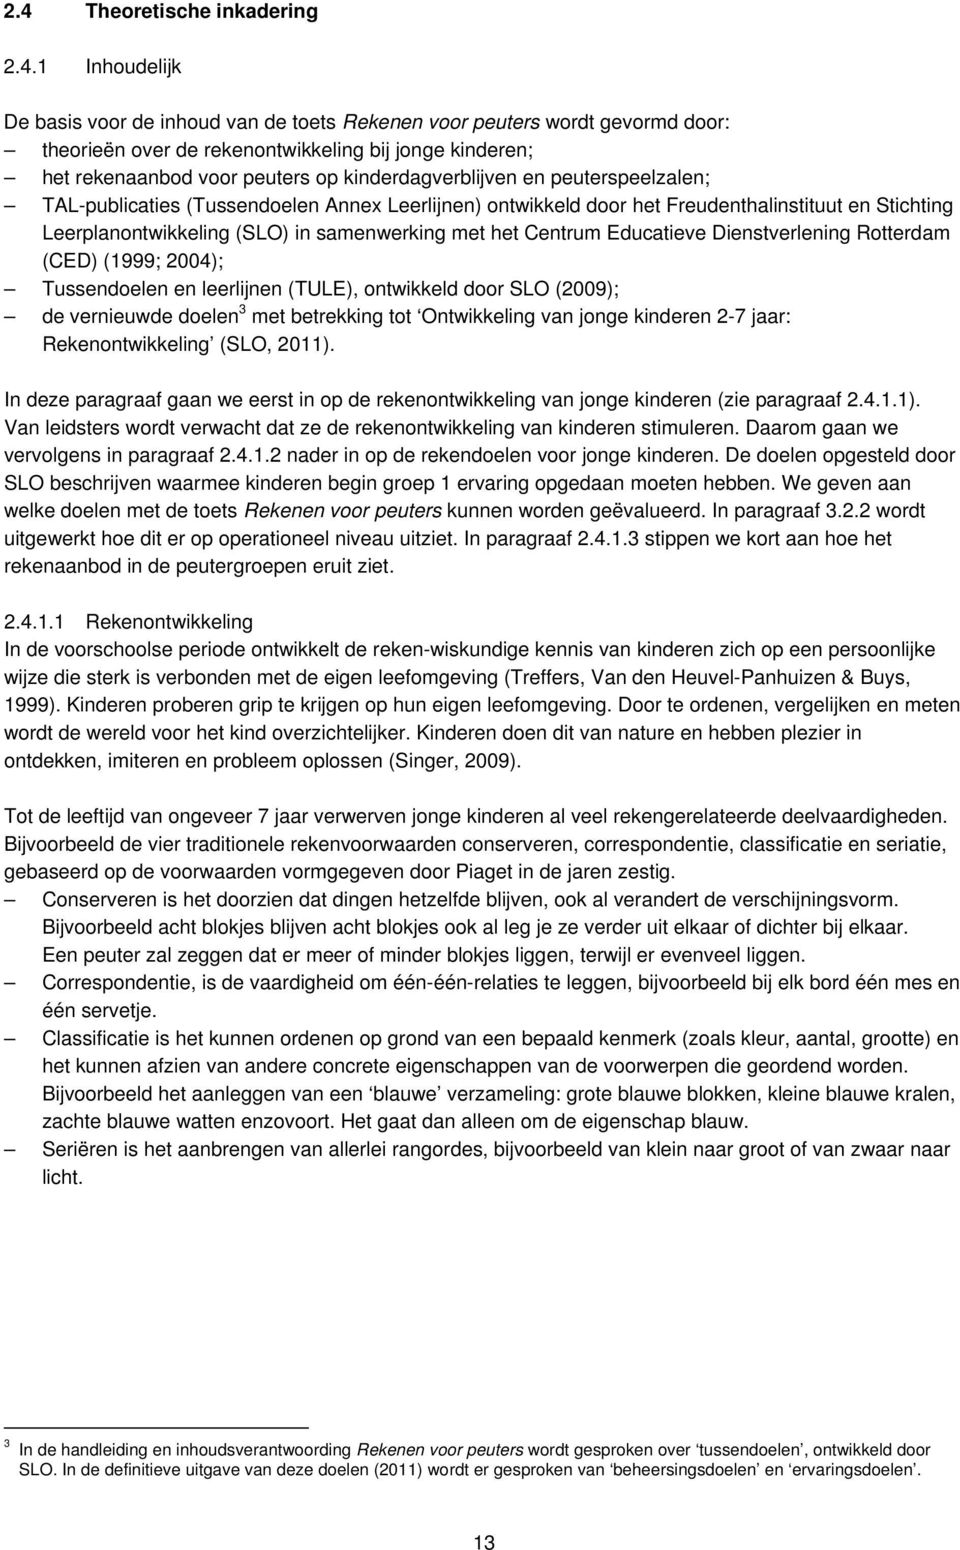 samenwerking met het Centrum Educatieve Dienstverlening Rotterdam (CED) (1999; 2004); Tussendoelen en leerlijnen (TULE), ontwikkeld door SLO (2009); de vernieuwde doelen 3 met betrekking tot